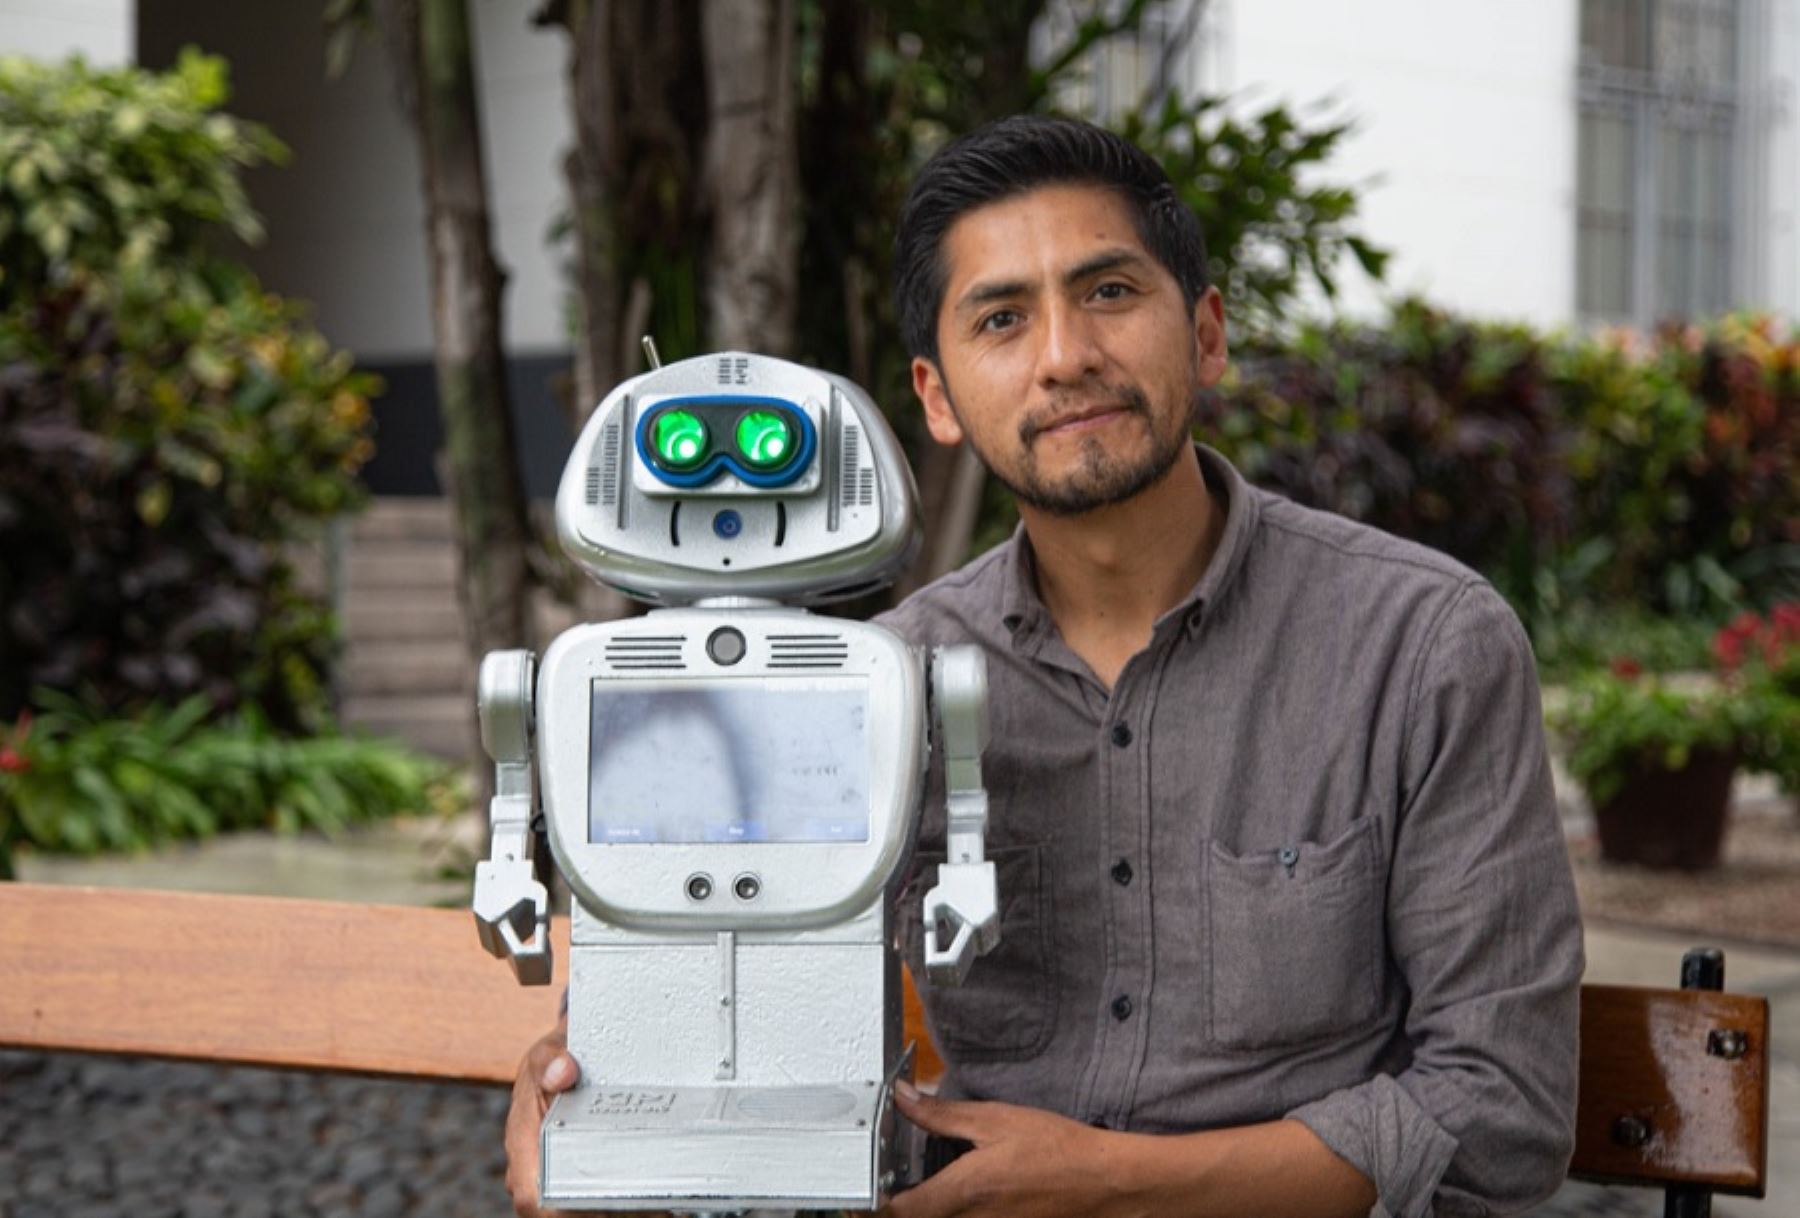 Kipi es no solo una robot; es en realidad un ecosistema de aprendizaje, sostiene su creador el profesor huancavelicano Walter Velásquez Godoy.